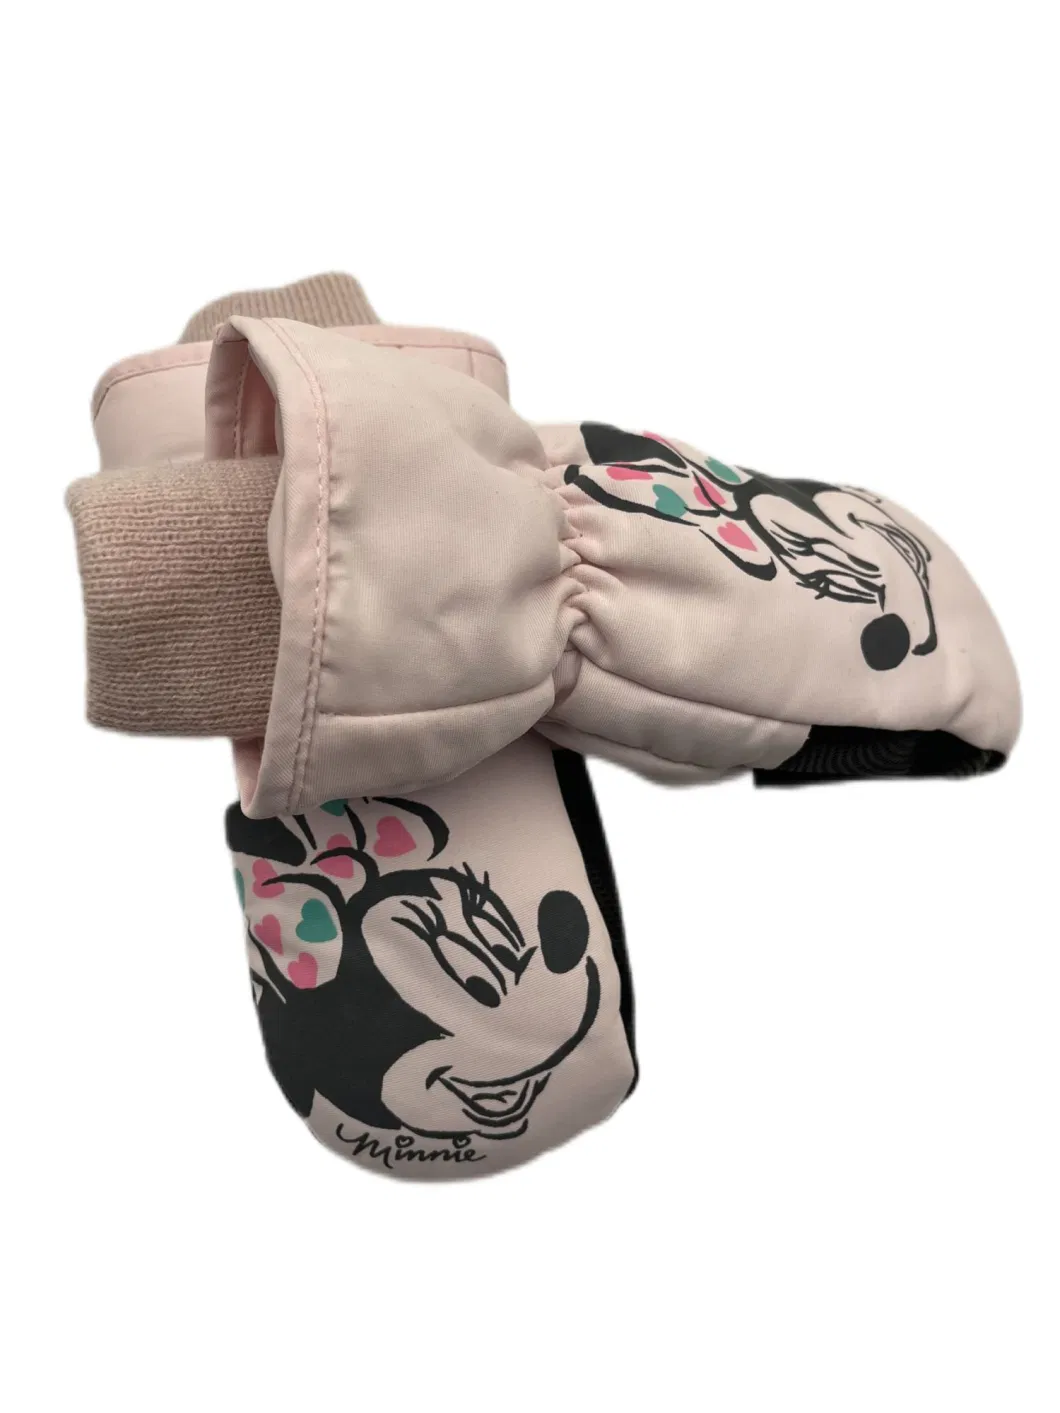 Kids Disney Winter Waterproof Ski Mitten Gloves with Minnie Print